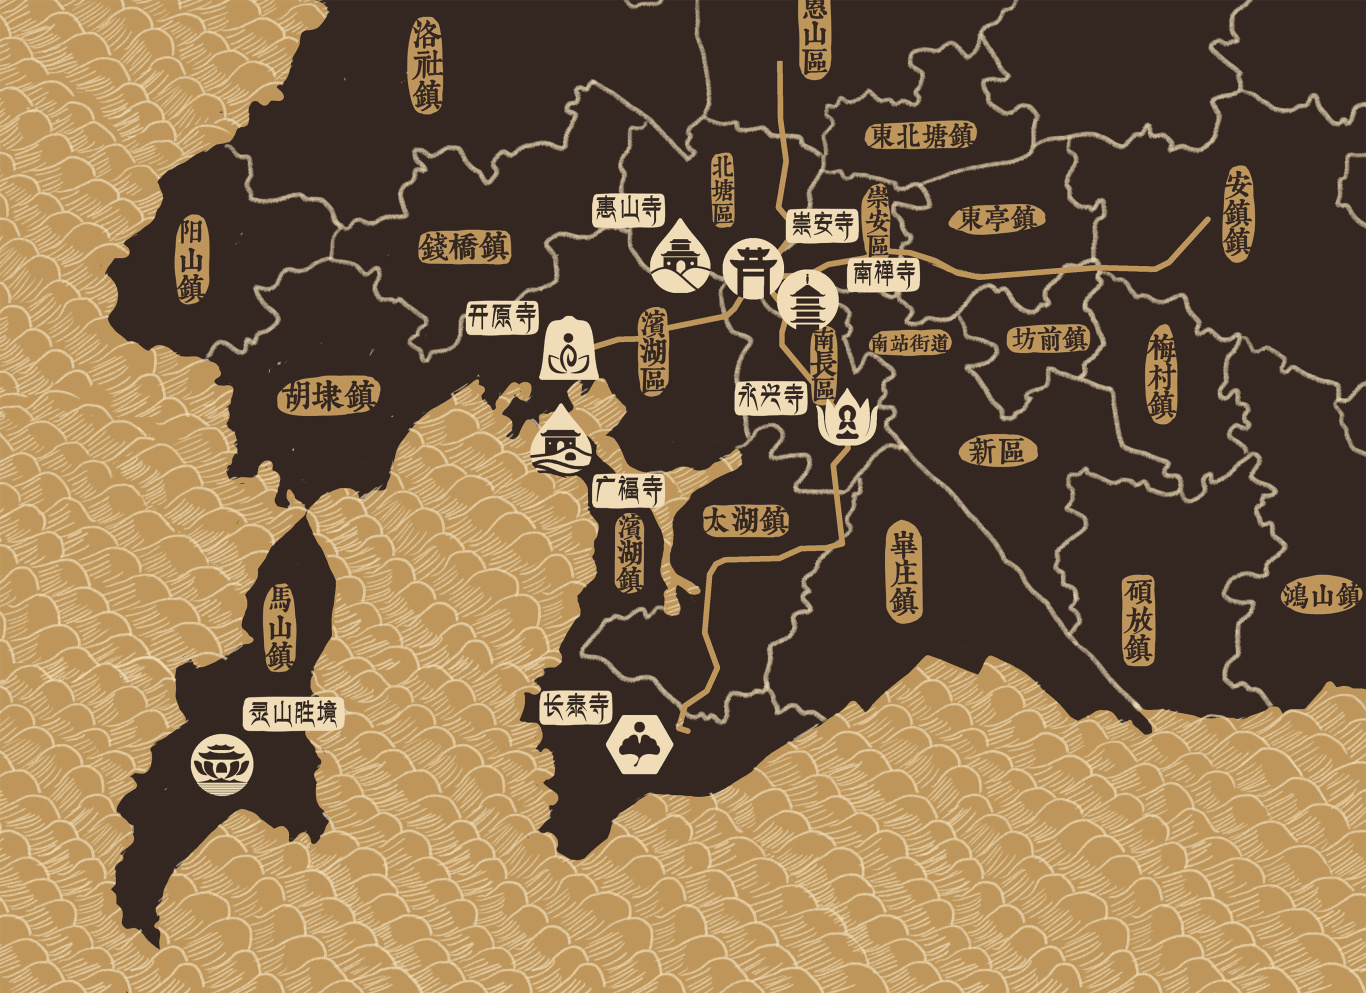 无锡佛寺文化旅游APP界面设计和导视地图绘制图2